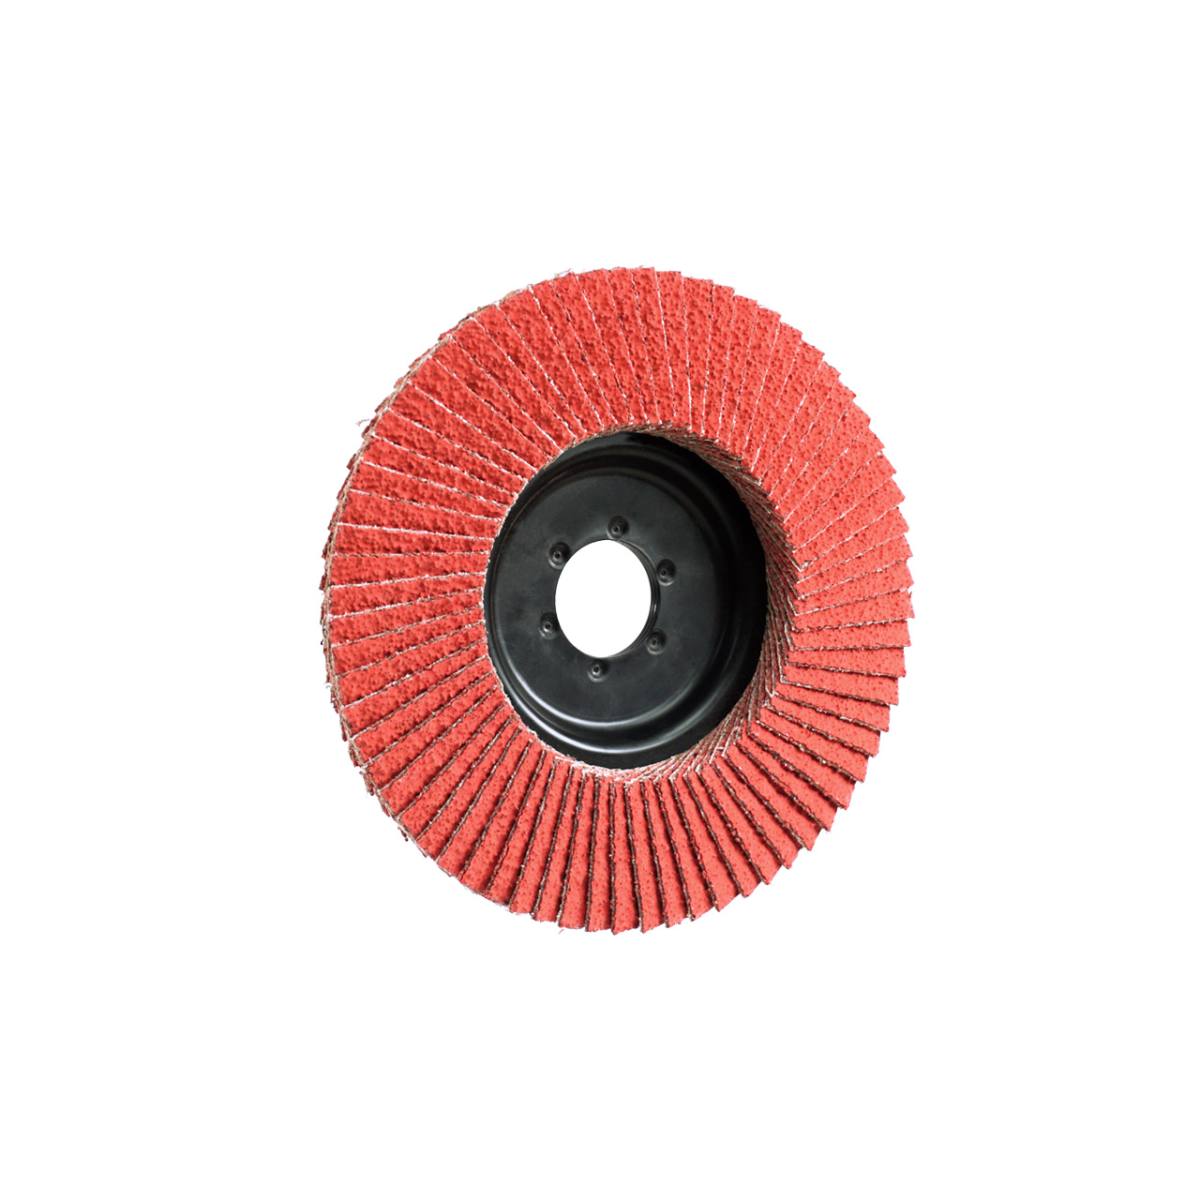 MAGNUM Ceramic, 125 mm x 22.2 mm, grit 80, flap disc